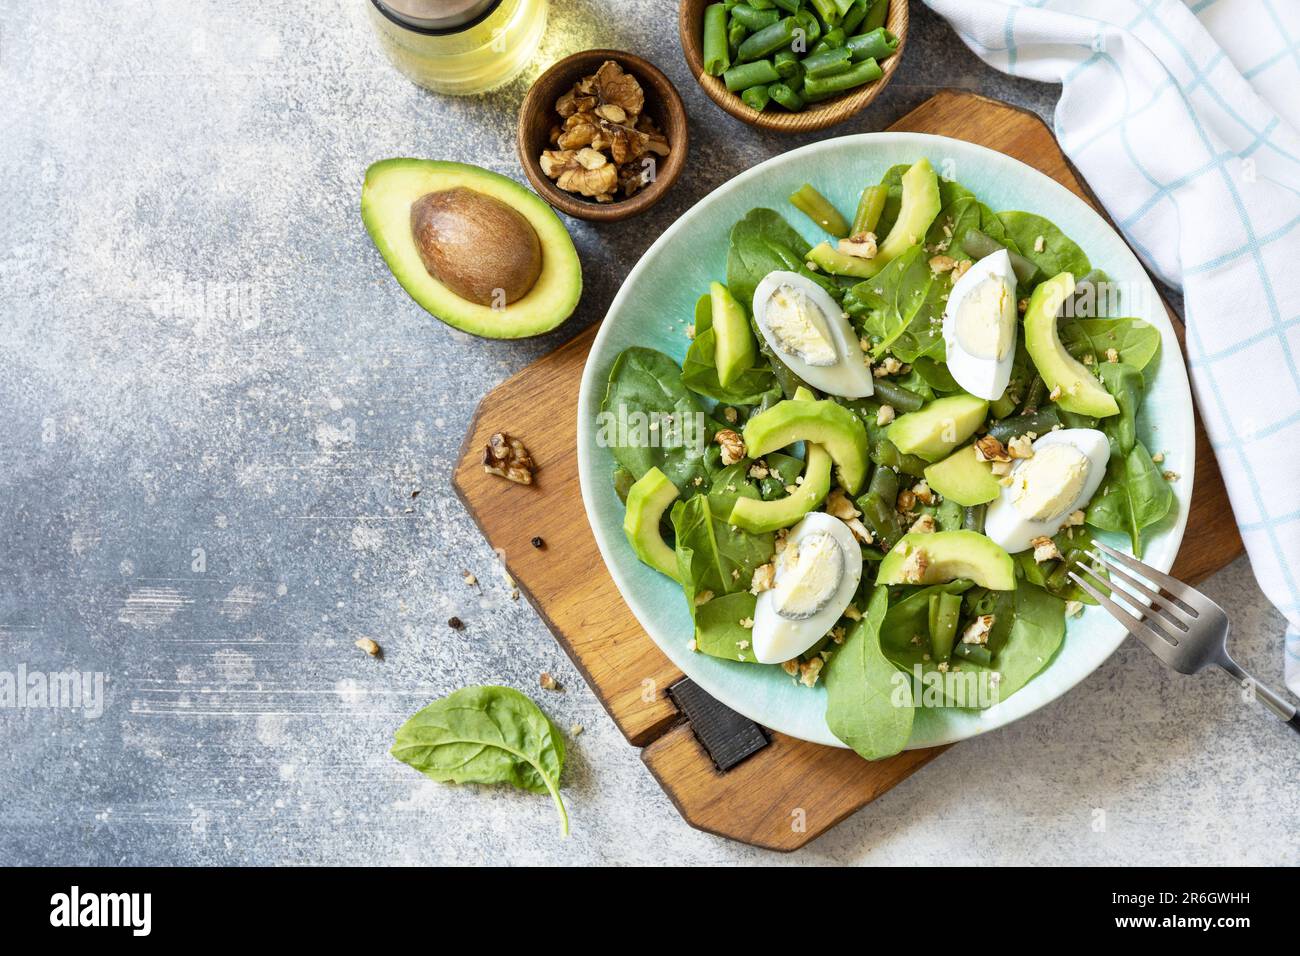 Salade verte bio d'avocat et d'épinards avec œufs, haricots verts, noix sur une table en pierre. Une alimentation saine, une alimentation saine l'été. Vue de dessus. Copier la flèche Banque D'Images